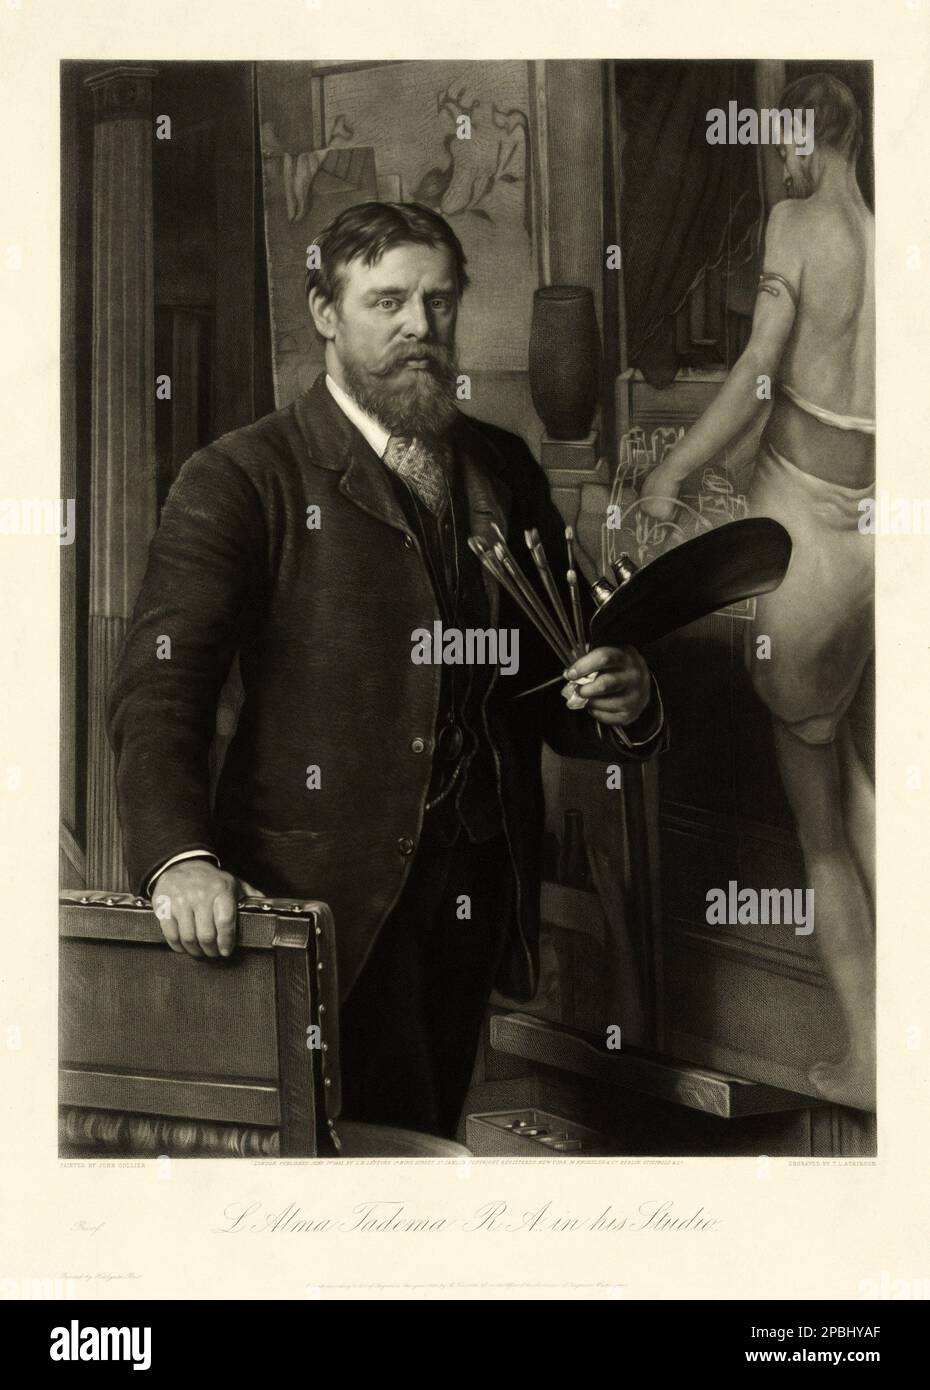 1885 , Londra, Gran Bretagna : Sir Lawrence Alma-Tadema (Dronrijp, 8 gennaio 1836 – Wiesbaden, 25 giugno 1912) è stato uno dei più raffinati e caratteristici pittori vittoriani . Ritratto inciso nel suo Studio , da un dipinto di JOHN COLLIER , inciso da T. L. Atkinson . Nato olandese, si trasferì a Londra nel 1870 e vi trascorse il resto della sua vita . Era un pittore a soggetto classico e divenne famoso per le sue raffigurazioni del lusso e della decadenza dell'Impero Romano, con figure langorose allestite in favolosi interni in marmo o sullo sfondo di un abbagliamento Foto Stock